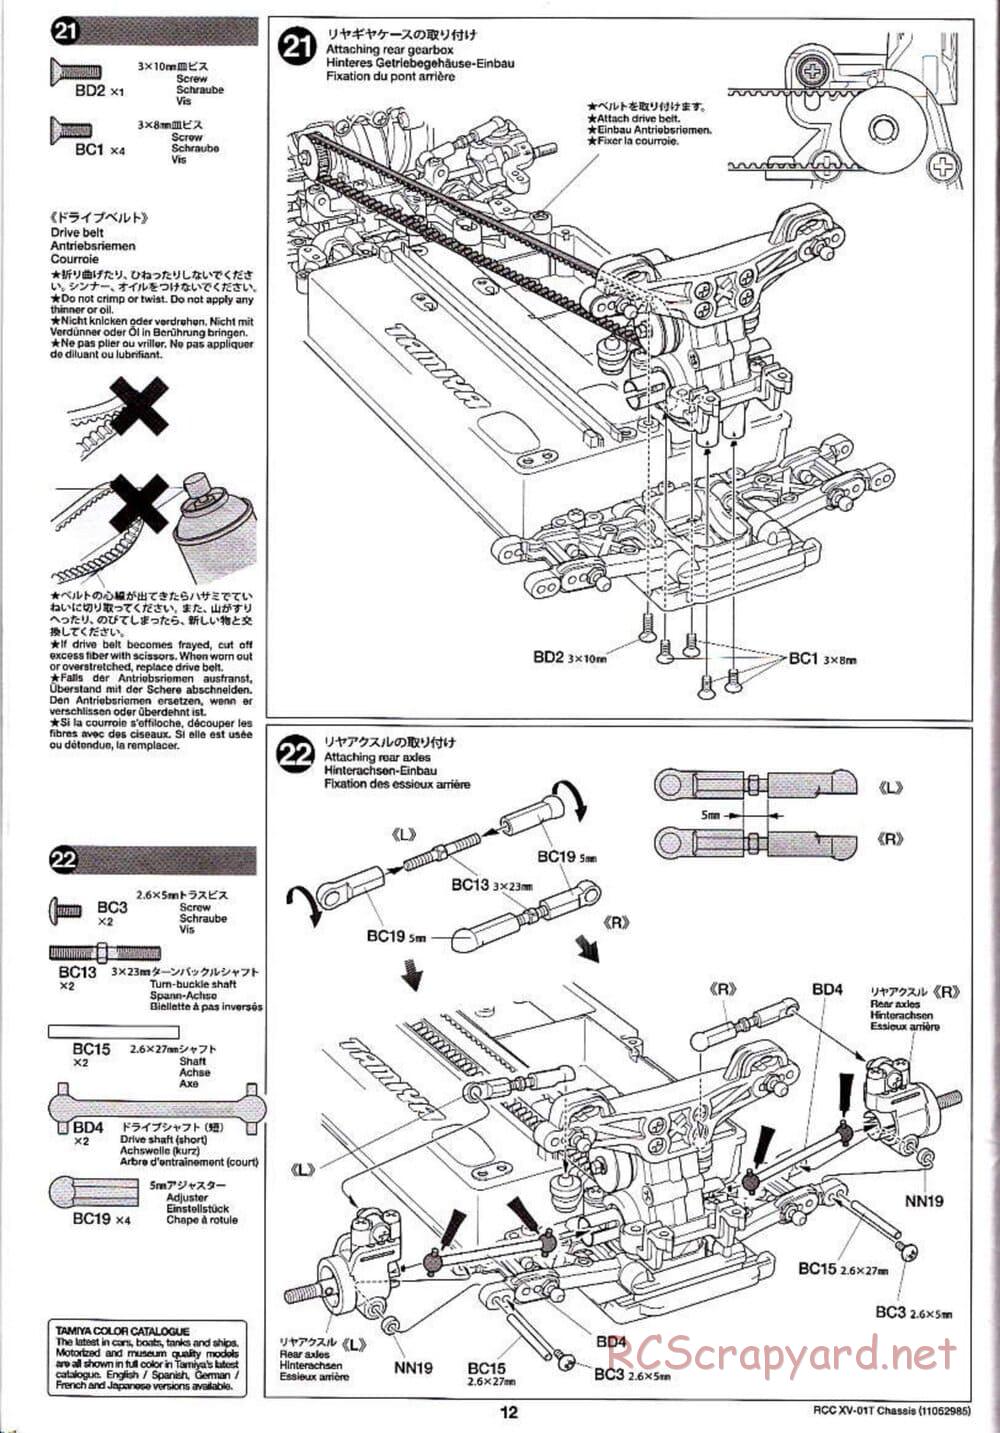 Tamiya - XV-01T Chassis - Manual - Page 12